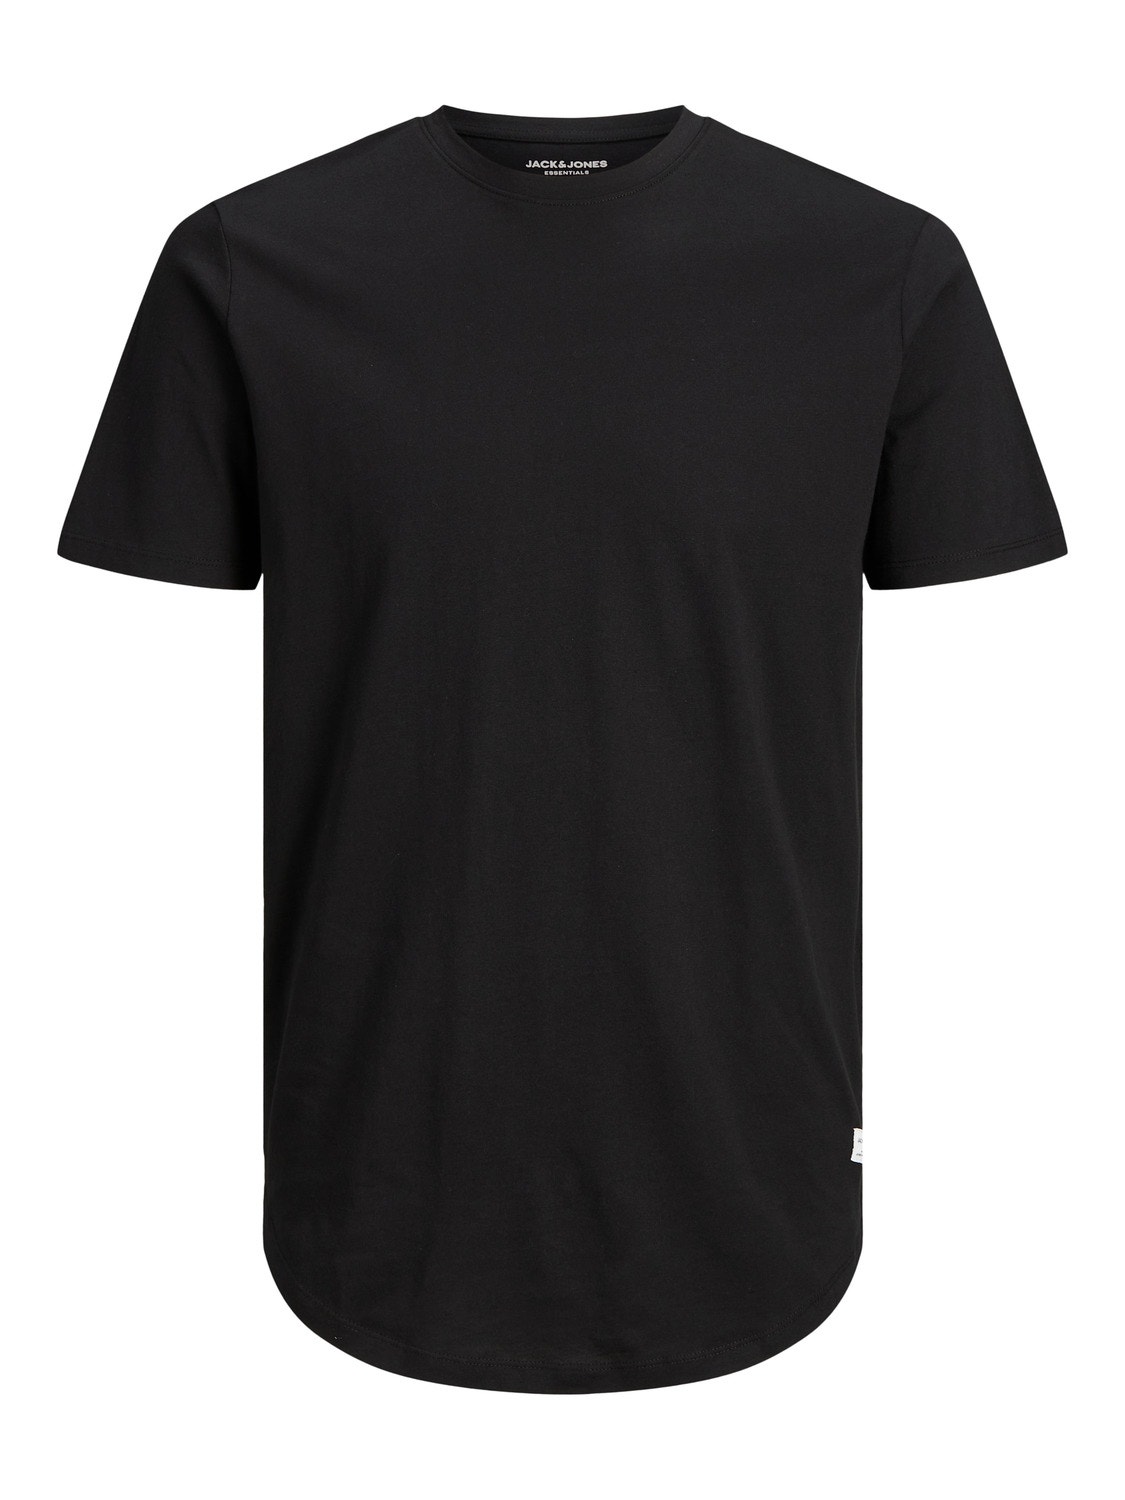 Jack & Jones Plus Plain T-shirt -Black - 12184933